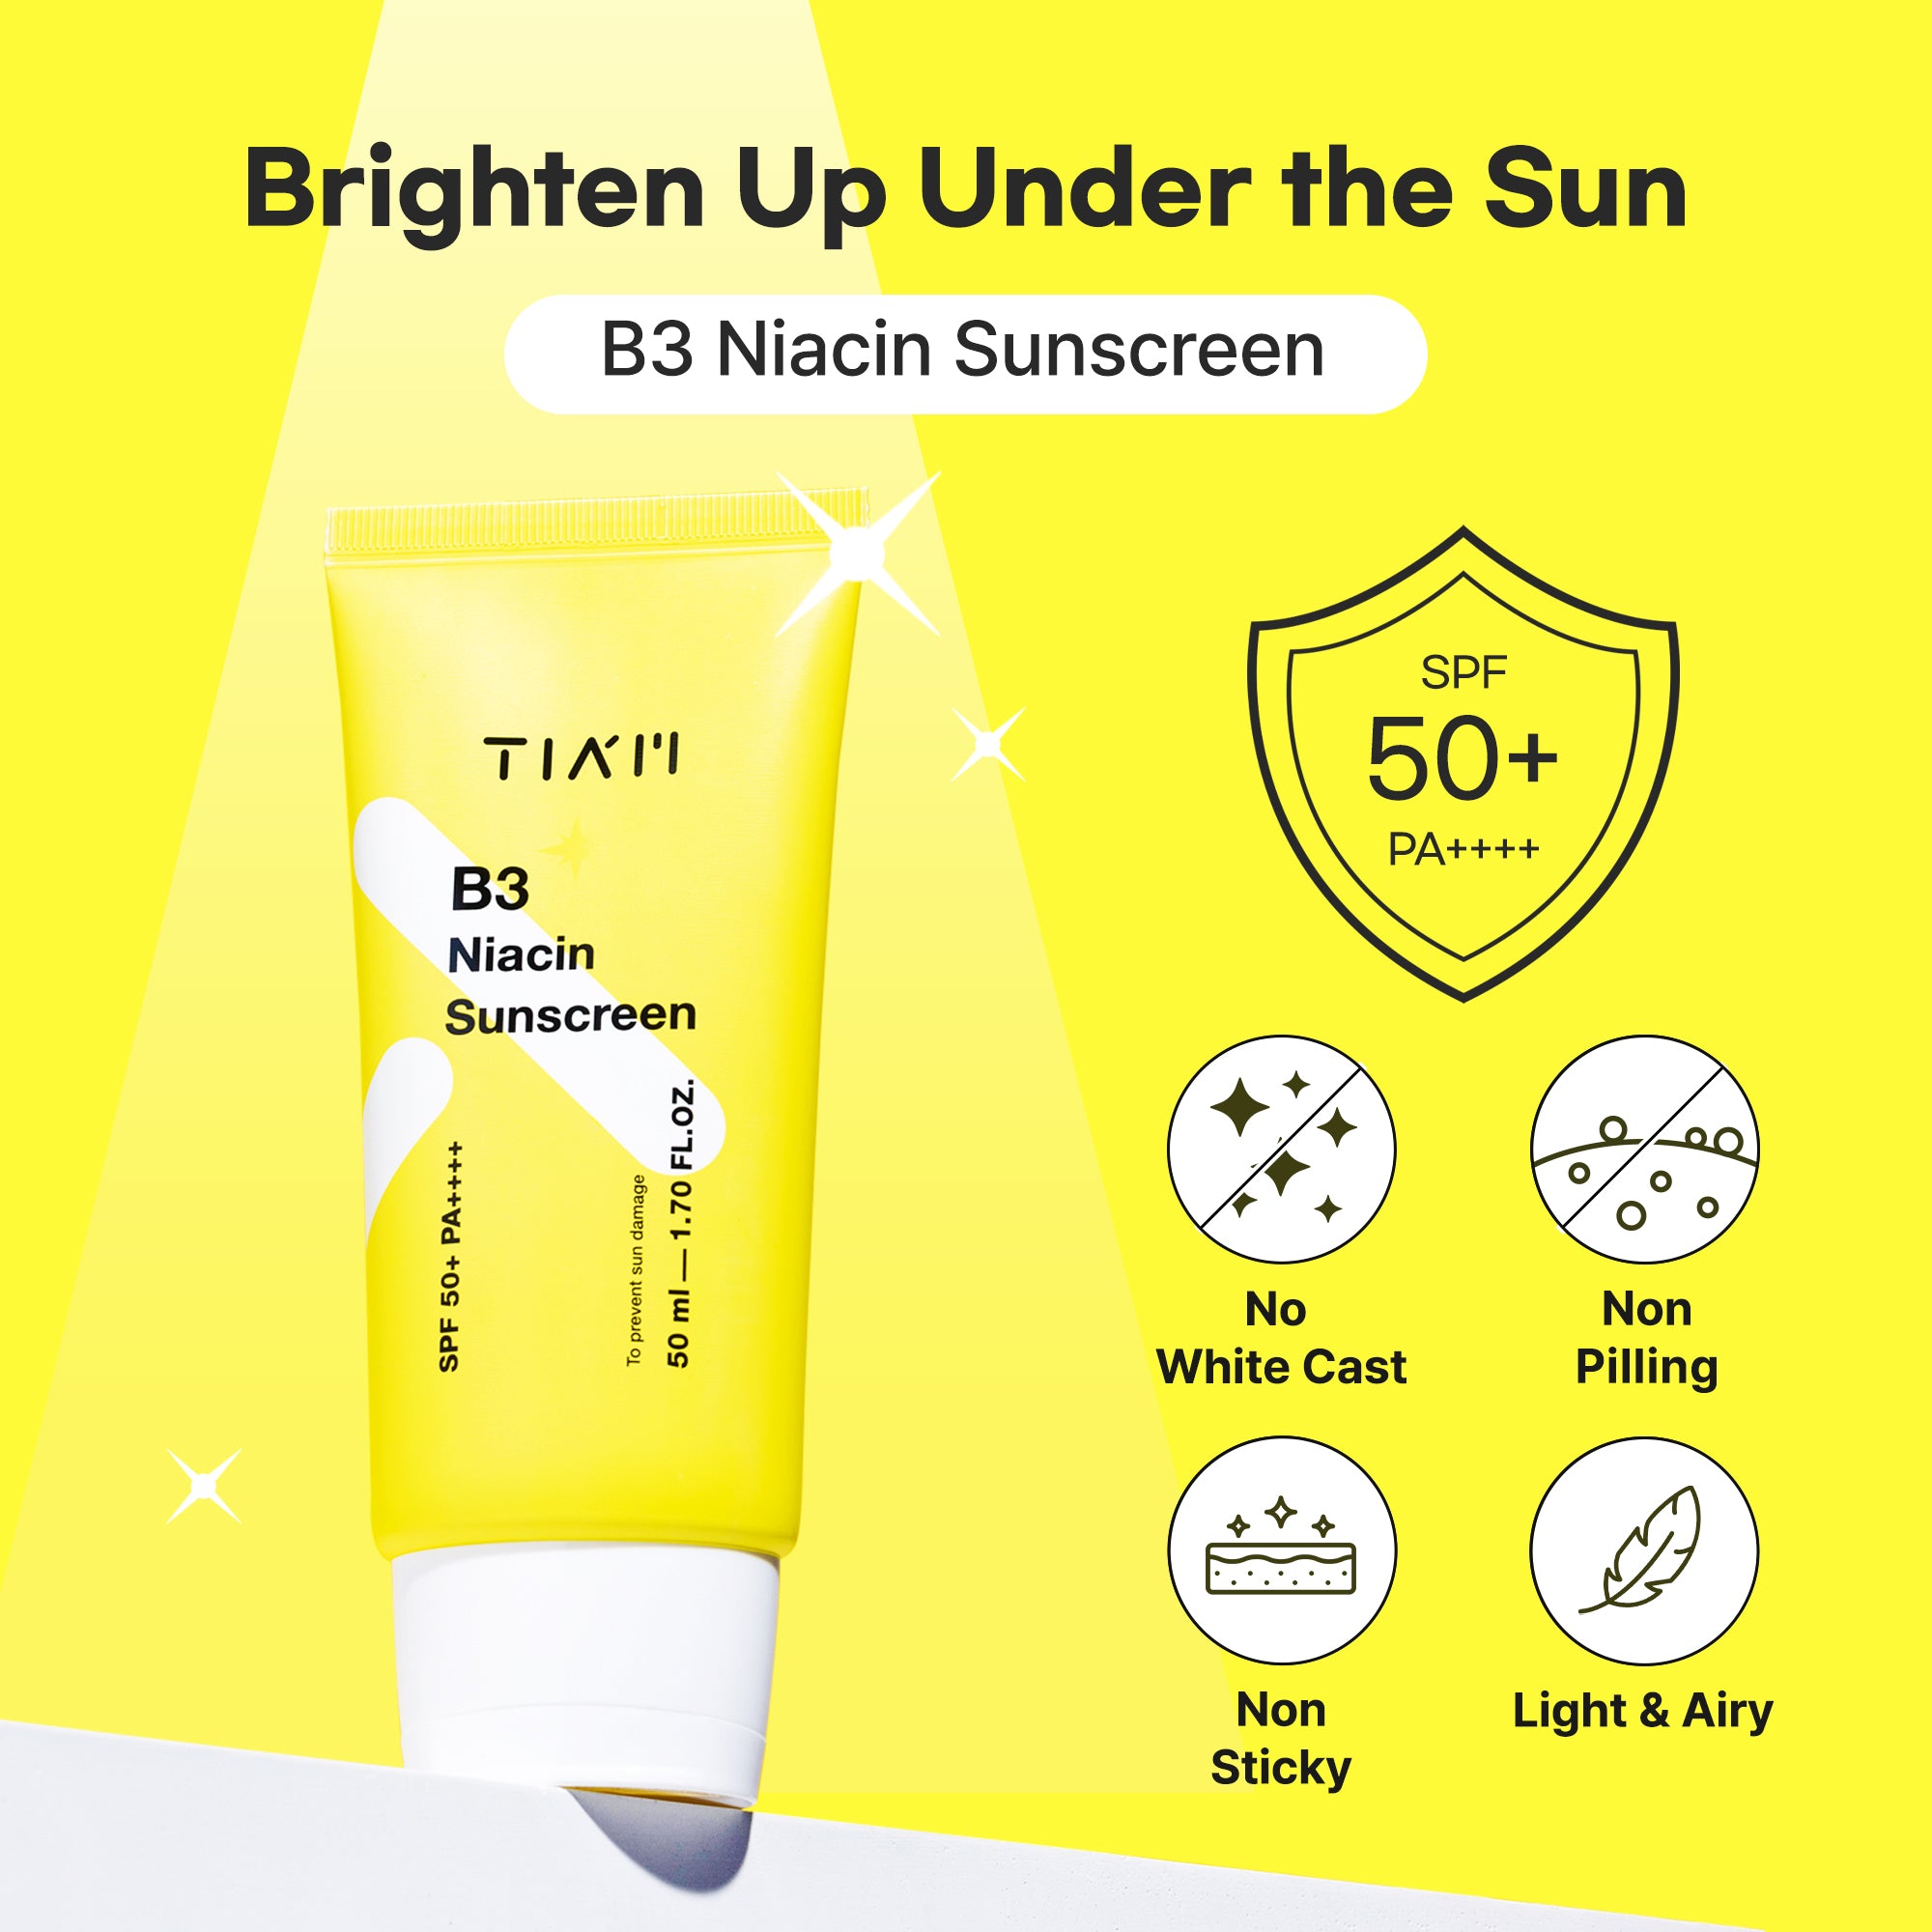 B3 Niacin Sunscreen